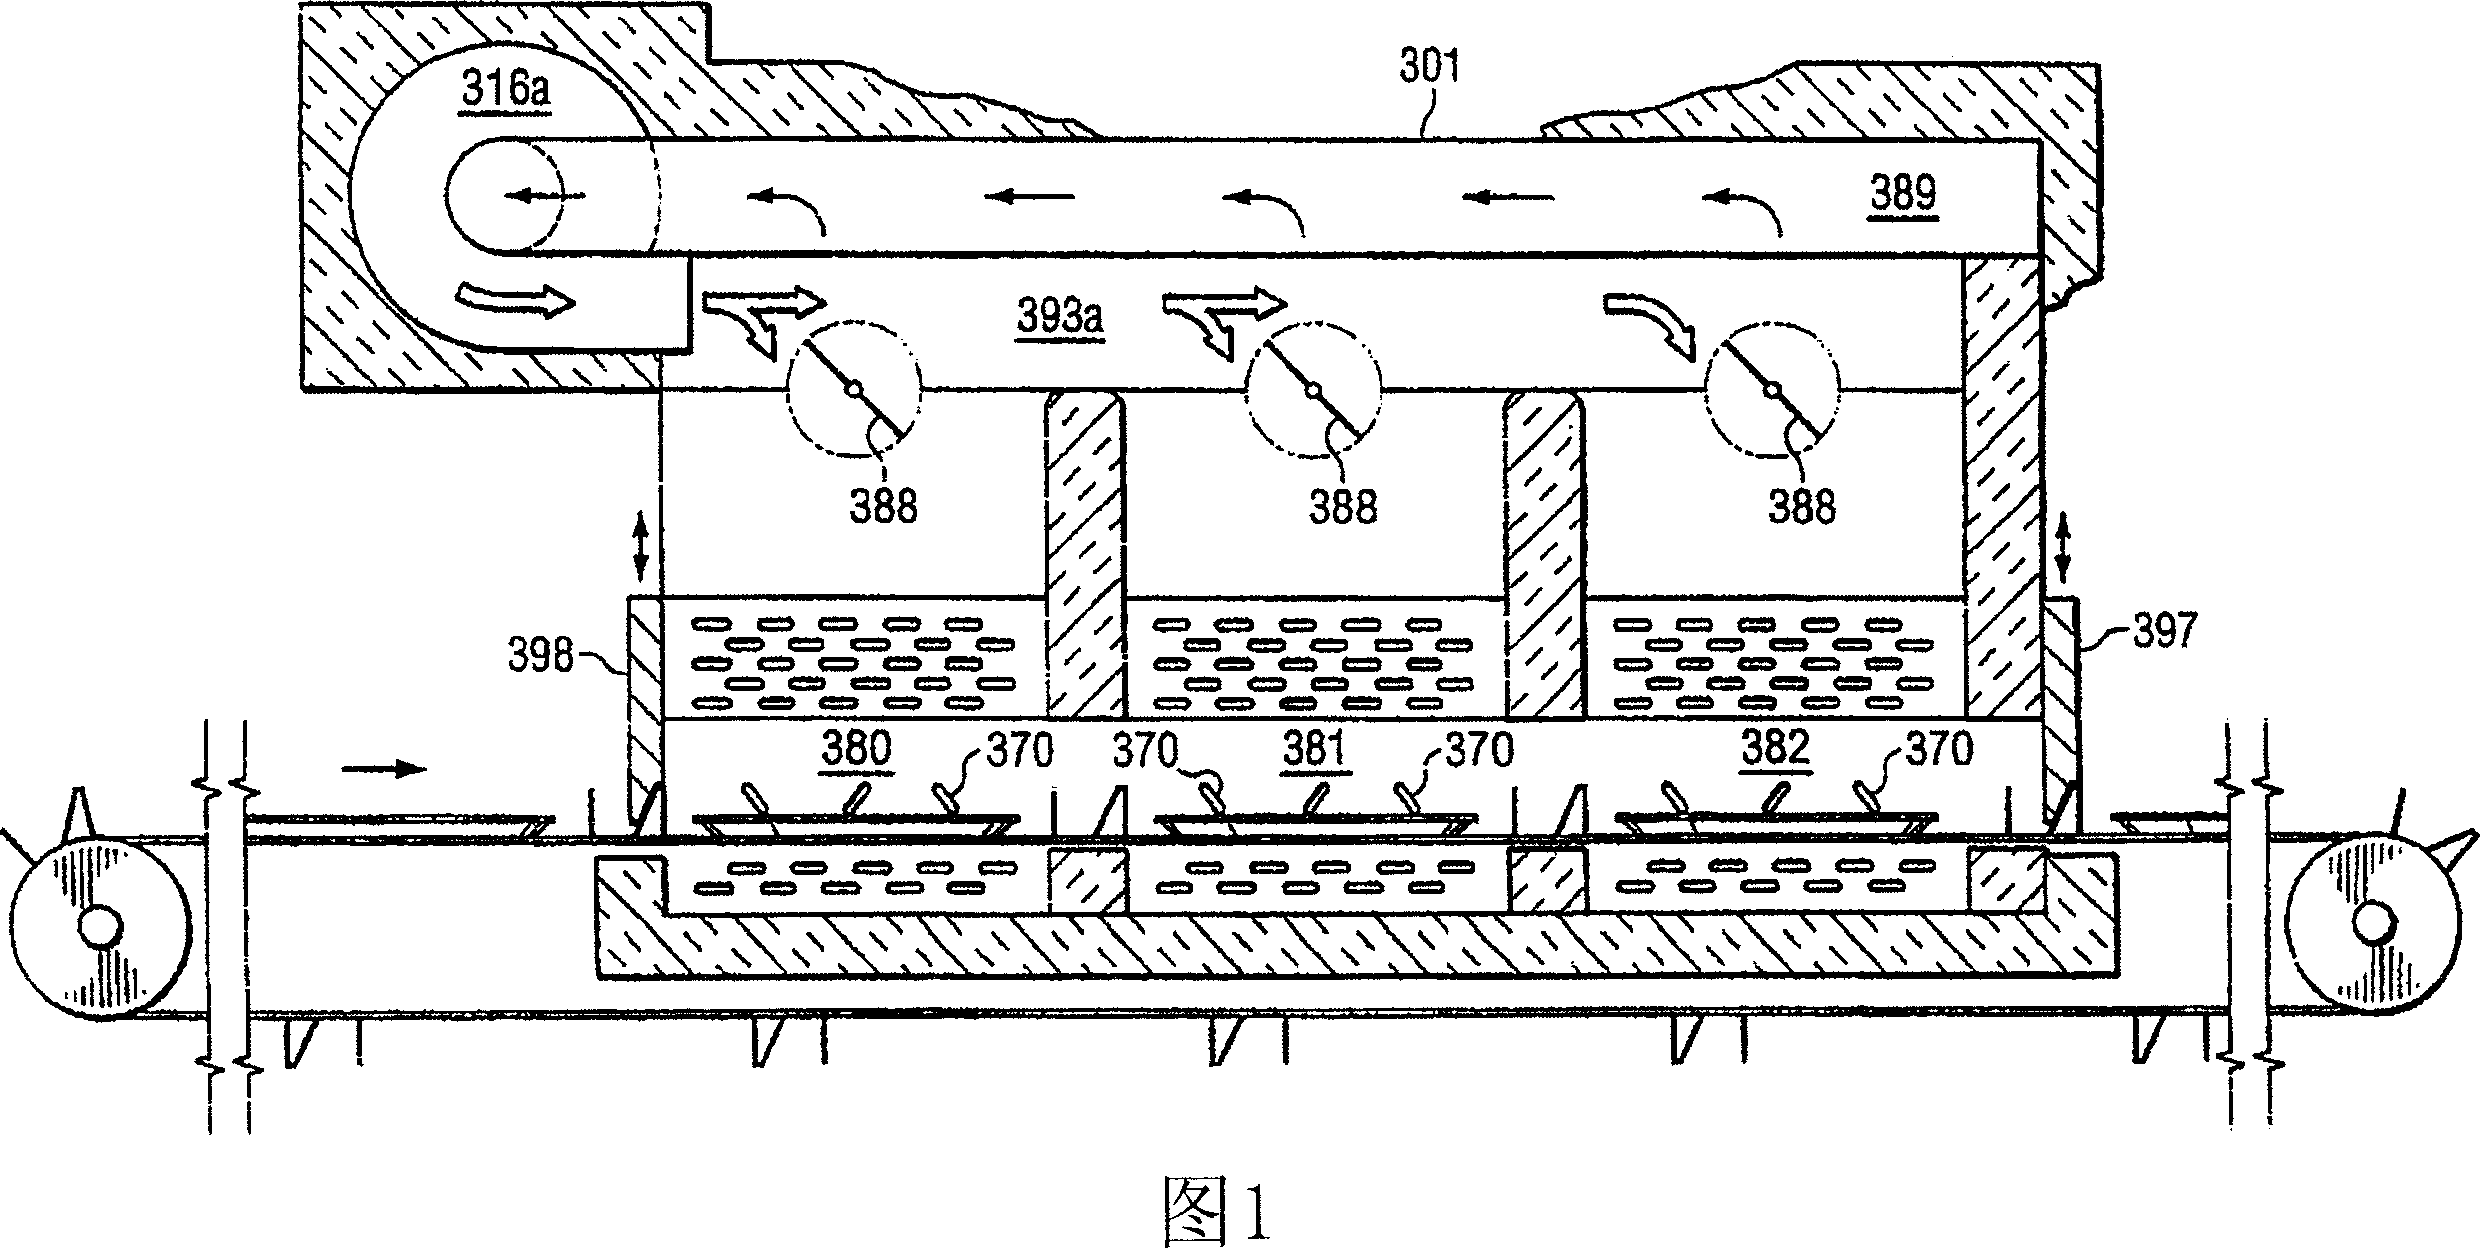 Conveyor oven